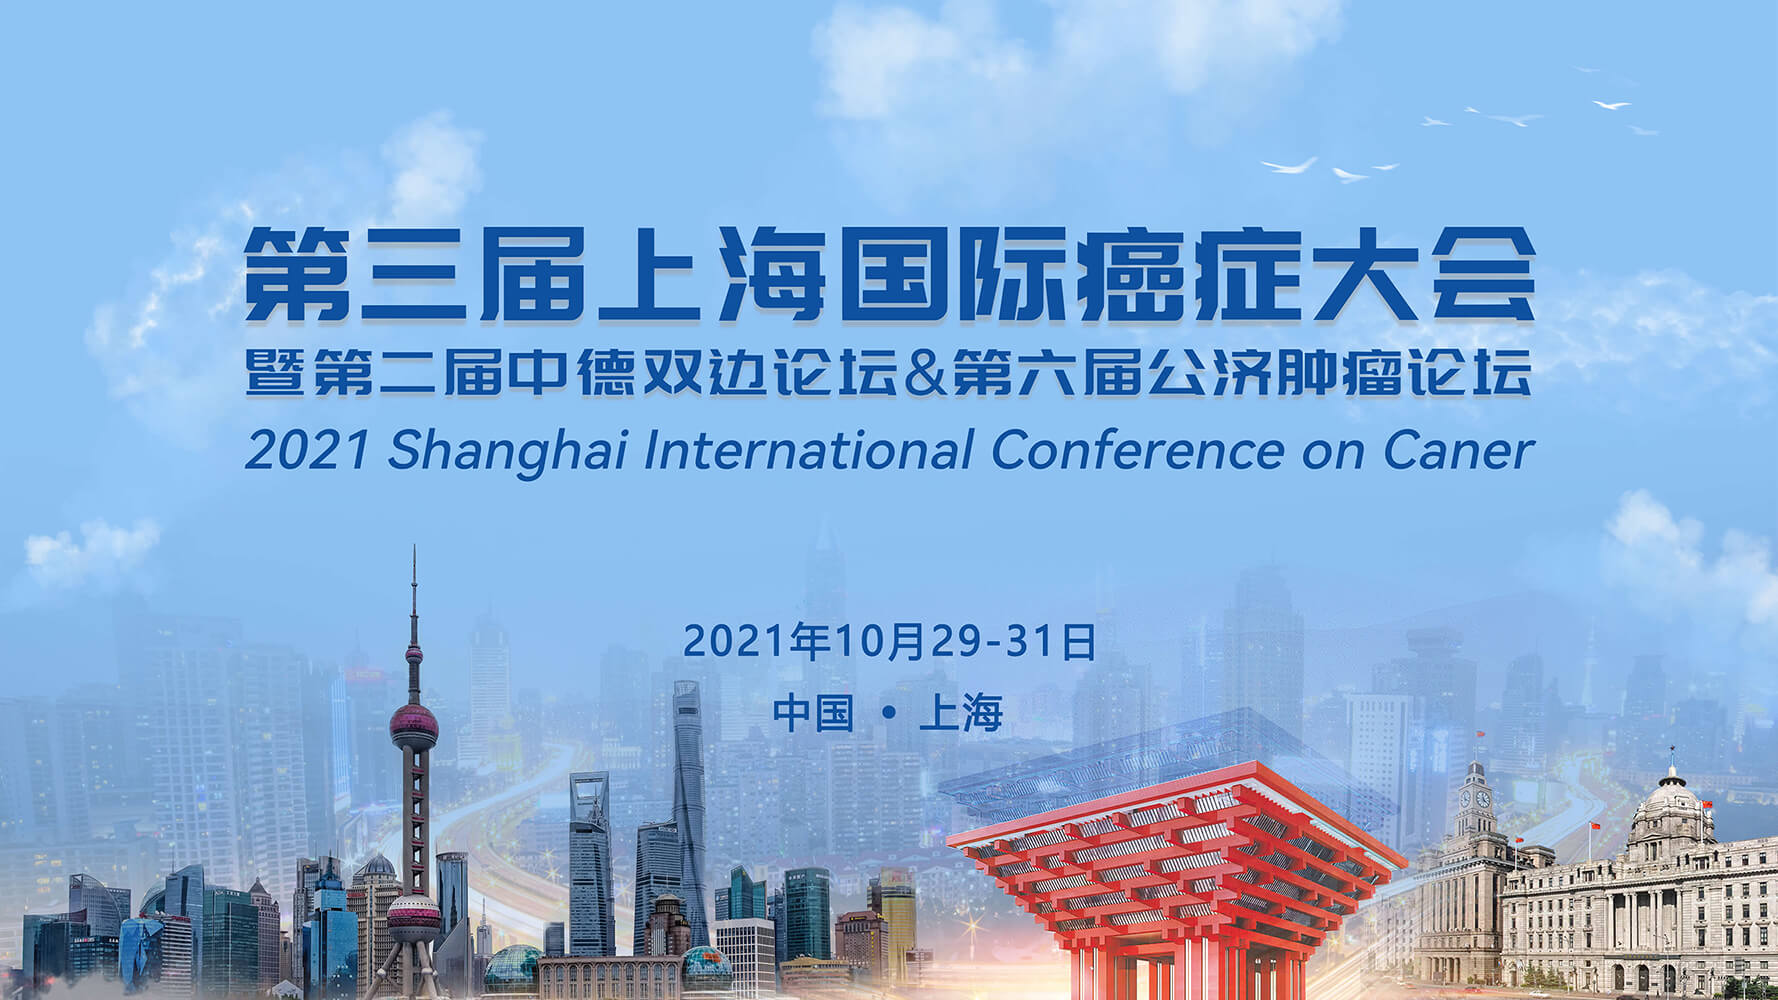 和元生物邀您参加2021第三届上海国际癌症大会